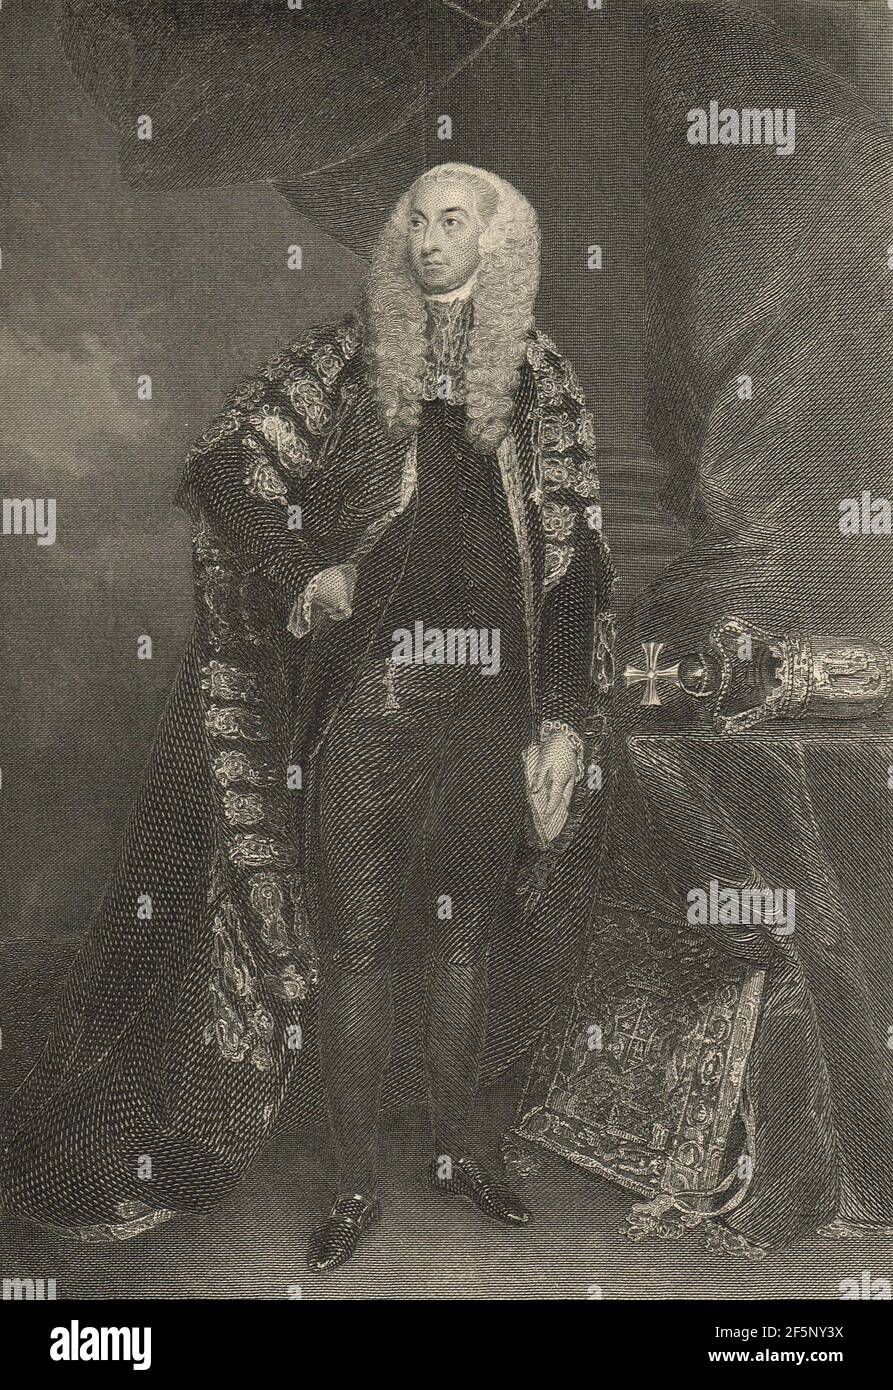 John FitzGibbon, 1er comte de Clare, Lord Chancelier d'Irlande pendant la rébellion irlandaise de 1798 Banque D'Images